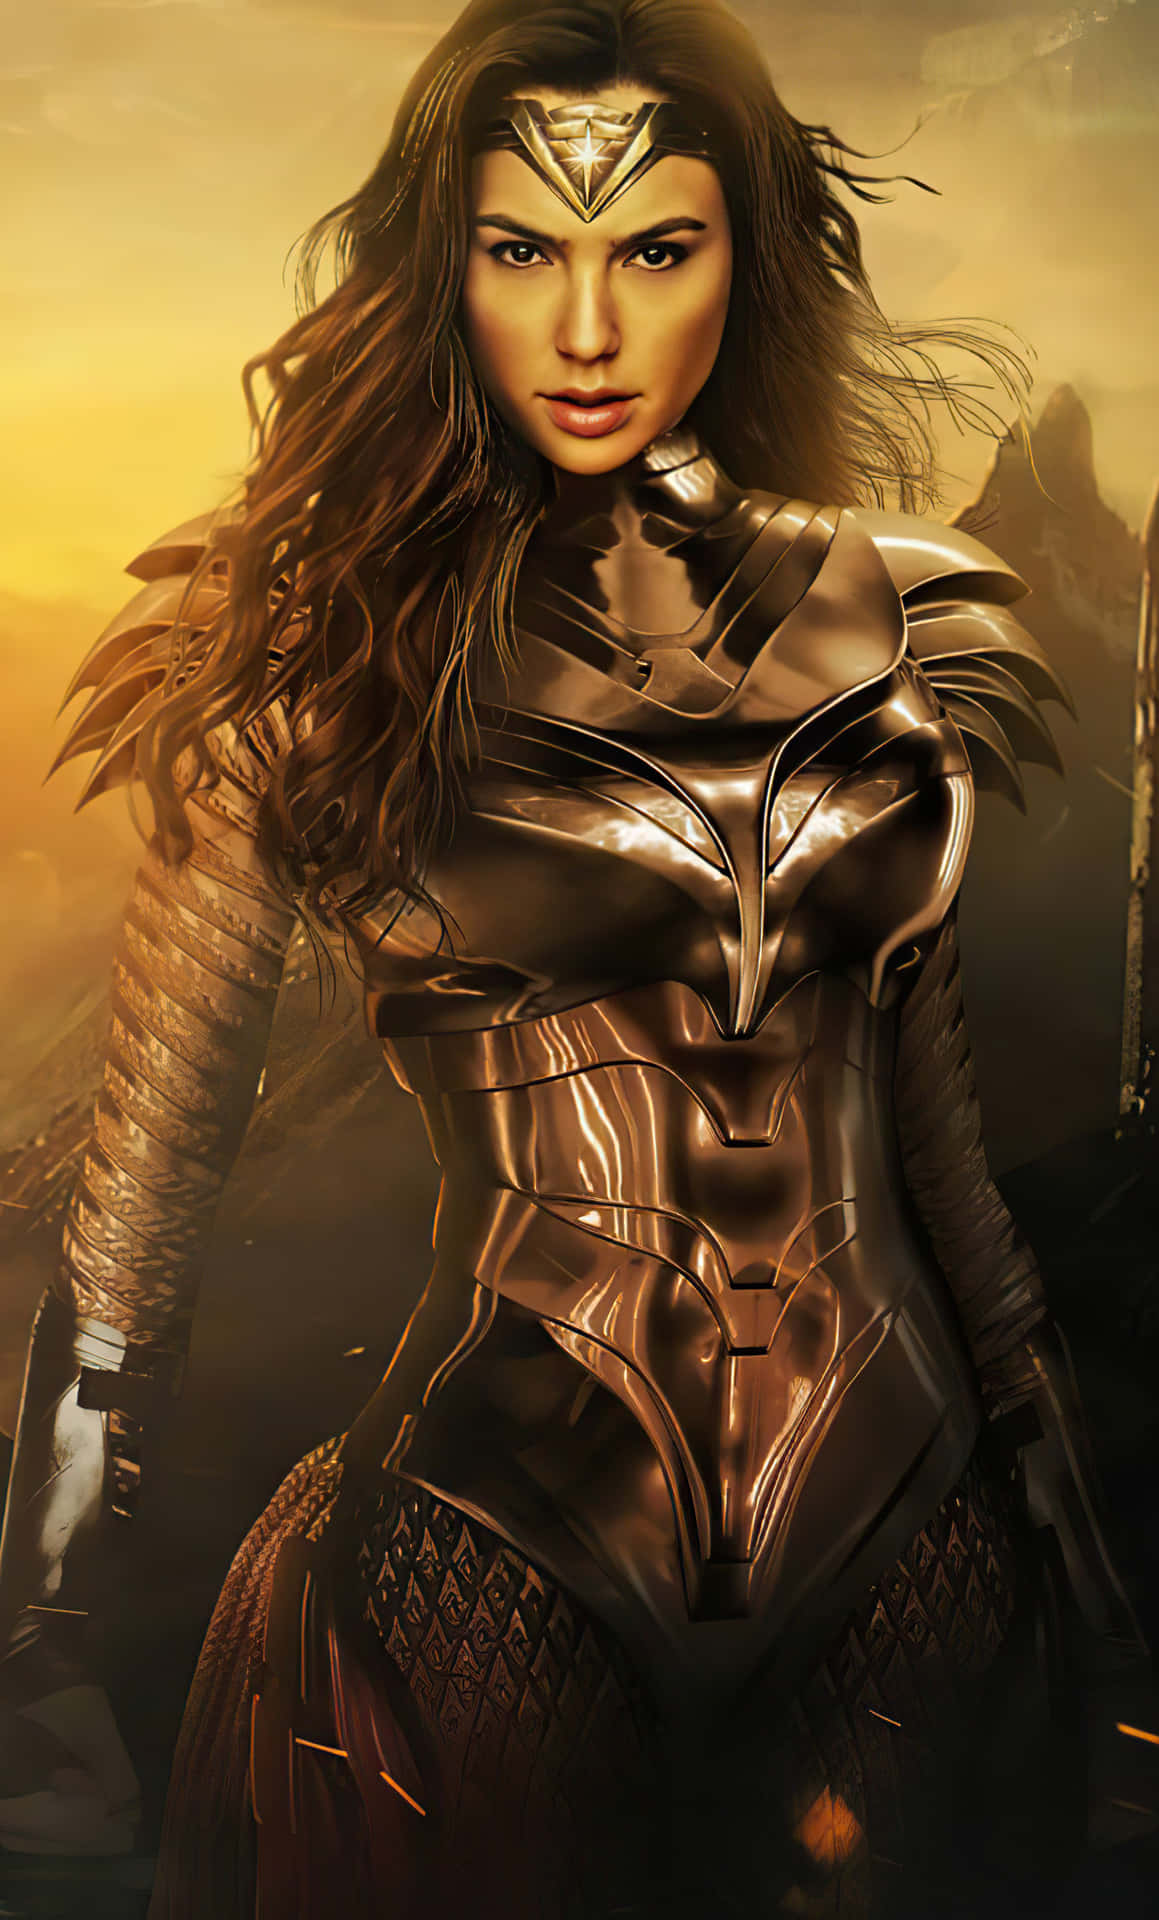 Galgadot Som Diana Prince, Den Amazoniska Superhjälten Från Dc:s Wonder Woman-serie.